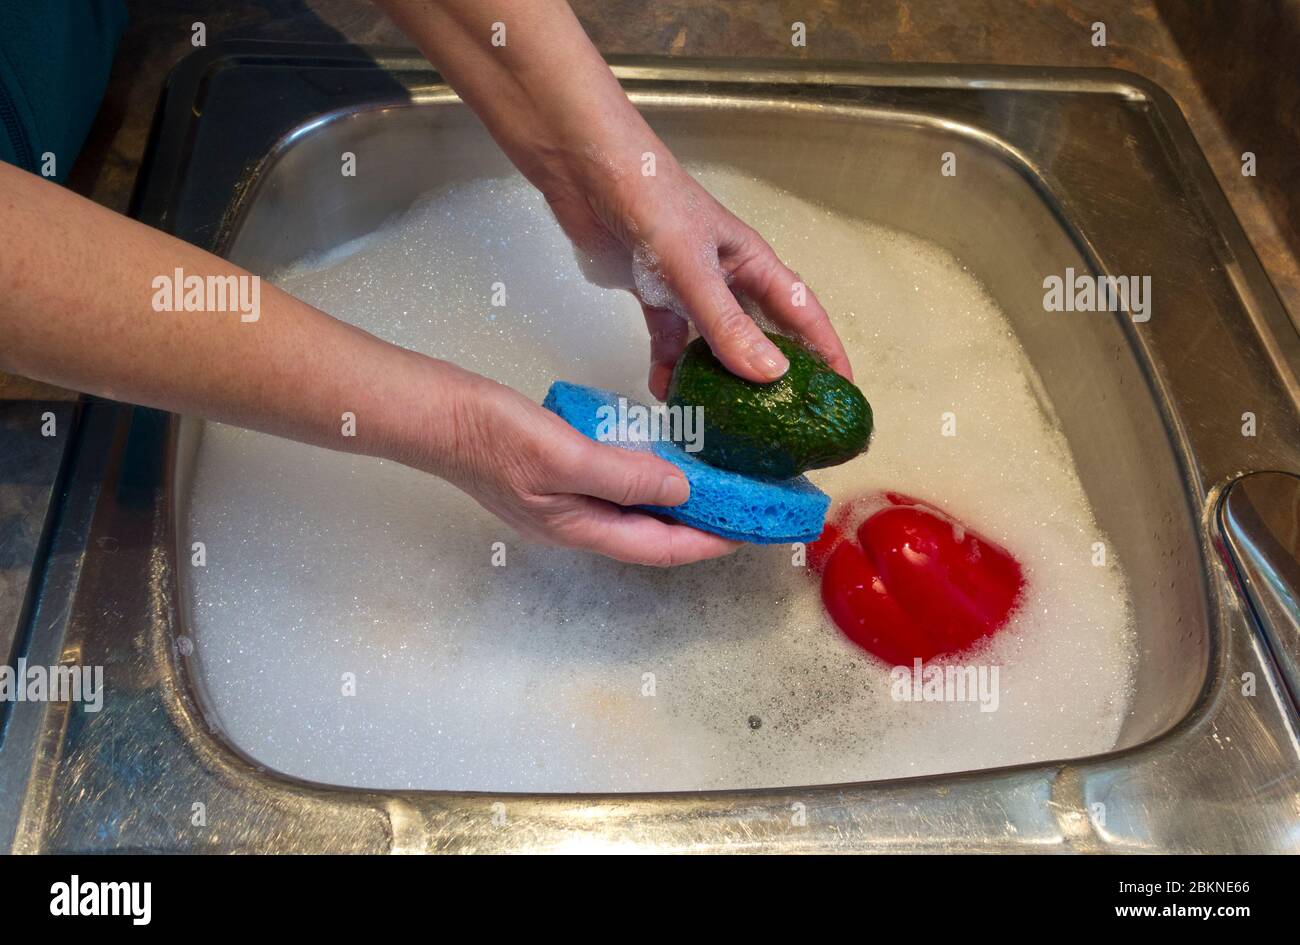 Donna che lava le verdure nel lavello della cucina con sapone piatto, cosa che NON è consigliata. Pulizia delle verdure (in modo errato) a causa della pandemia del coronavirus Foto Stock